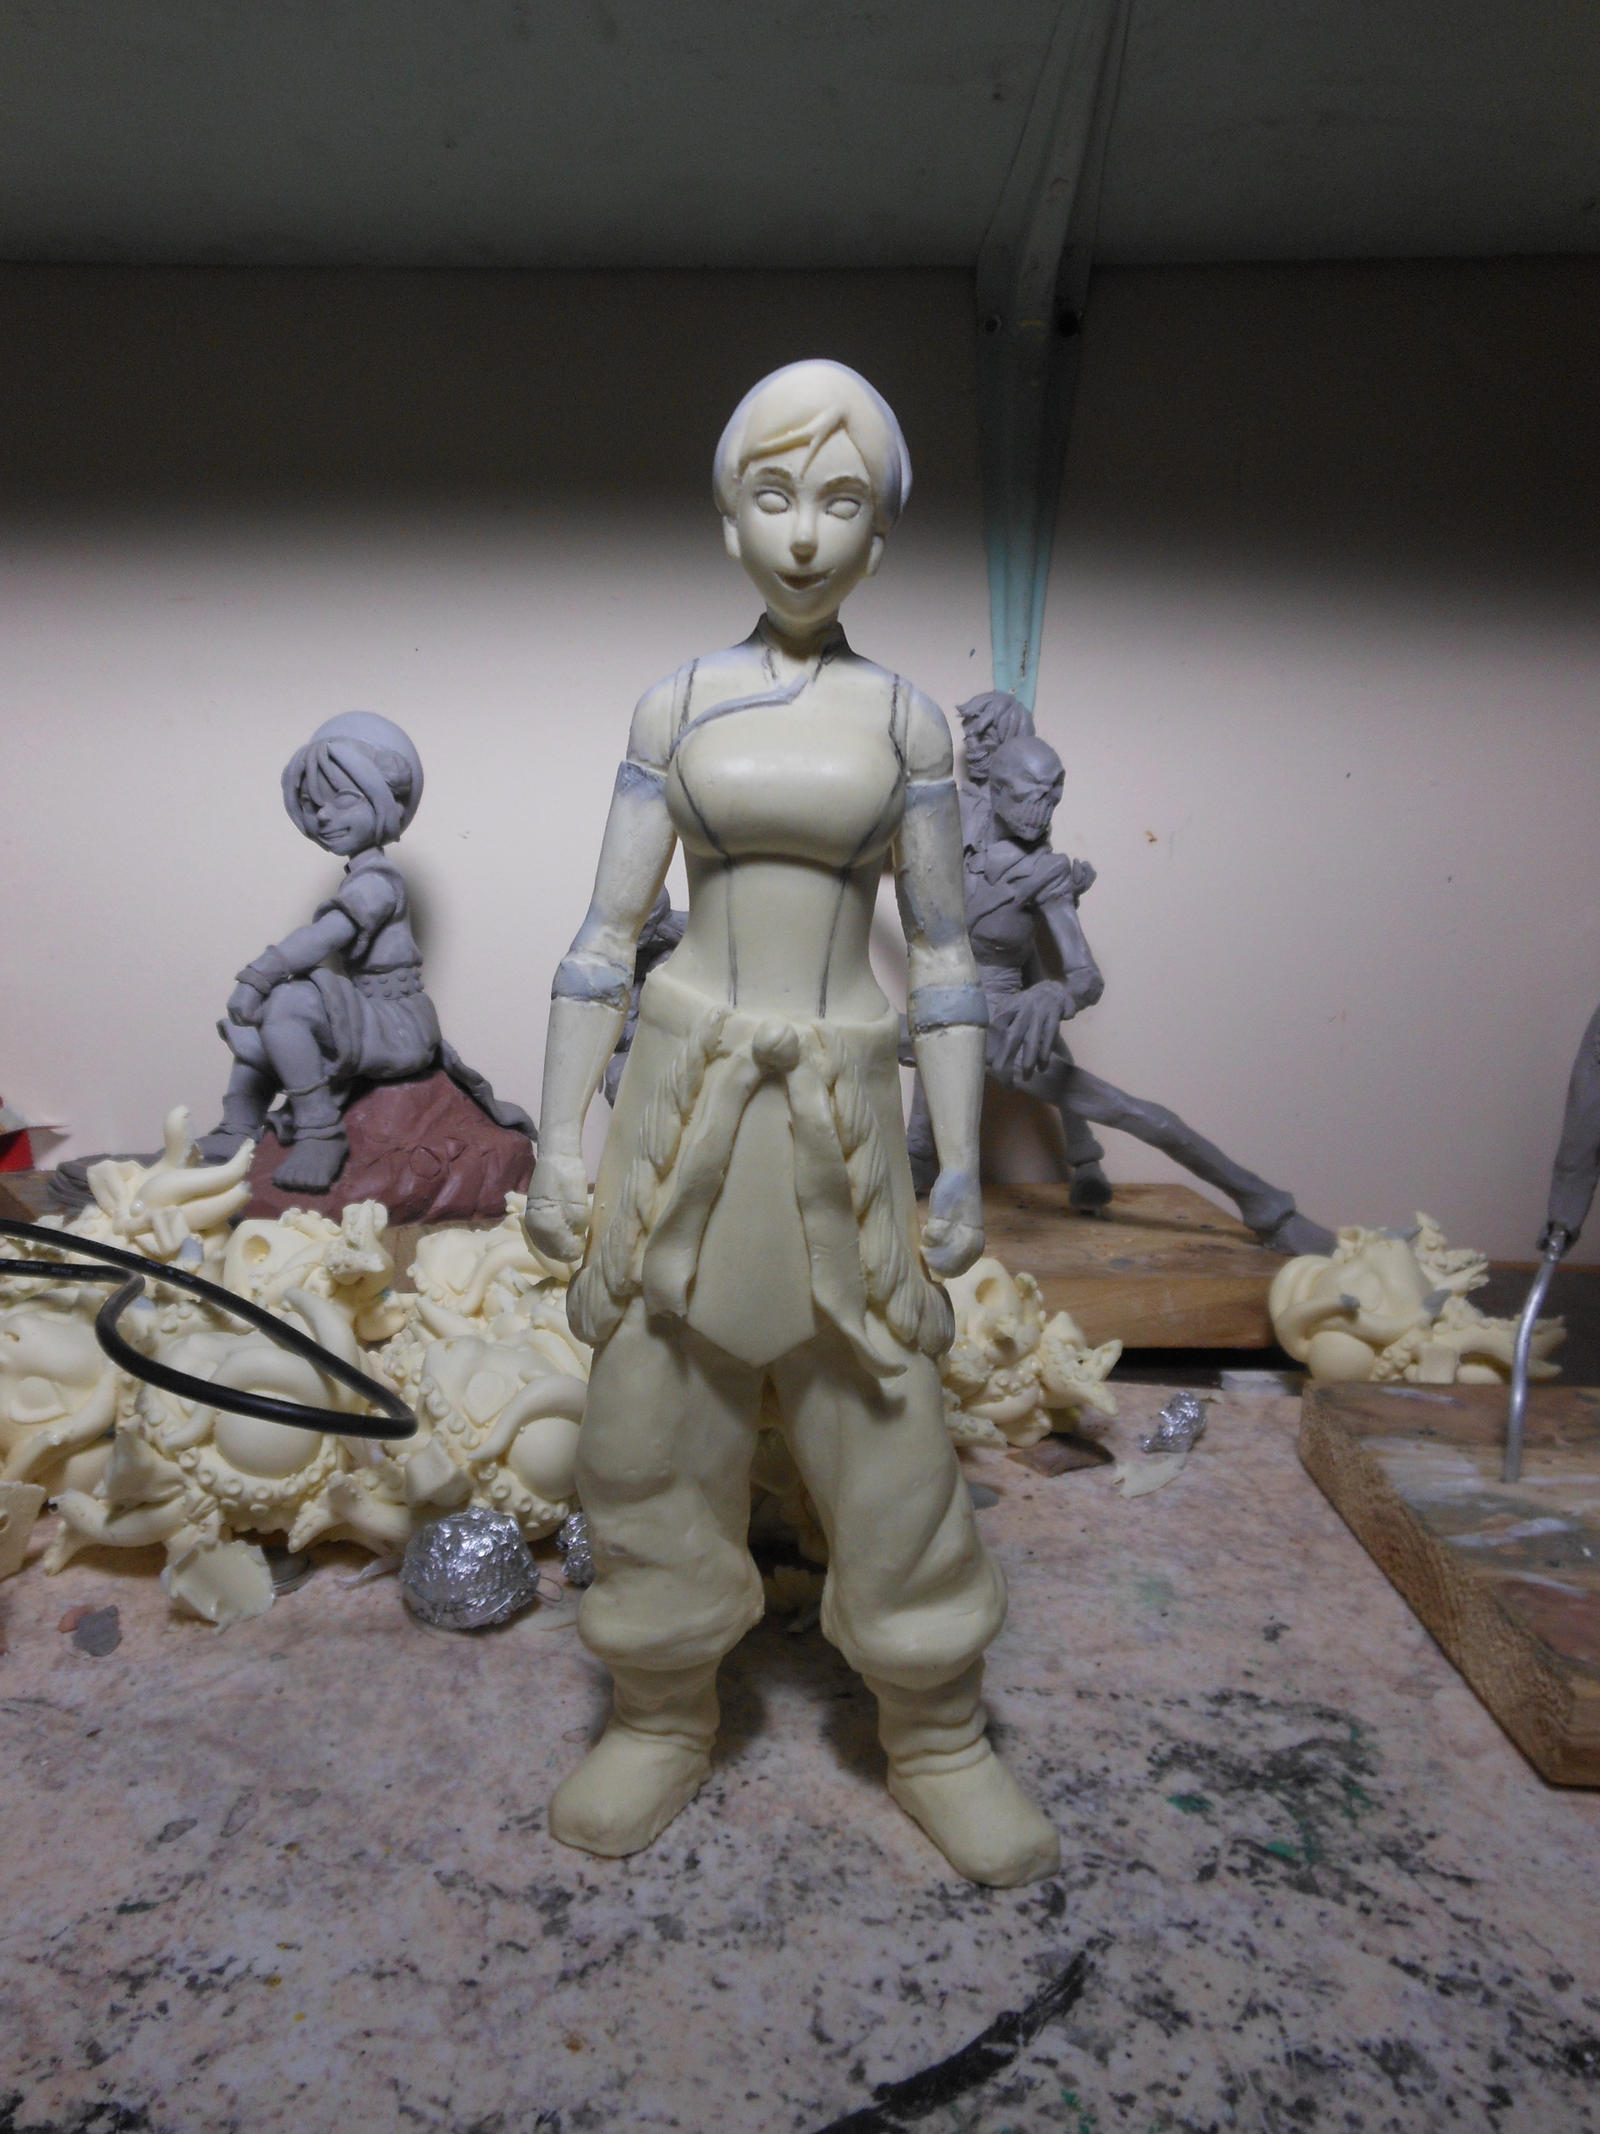 Korra season 2 sculpt in progress